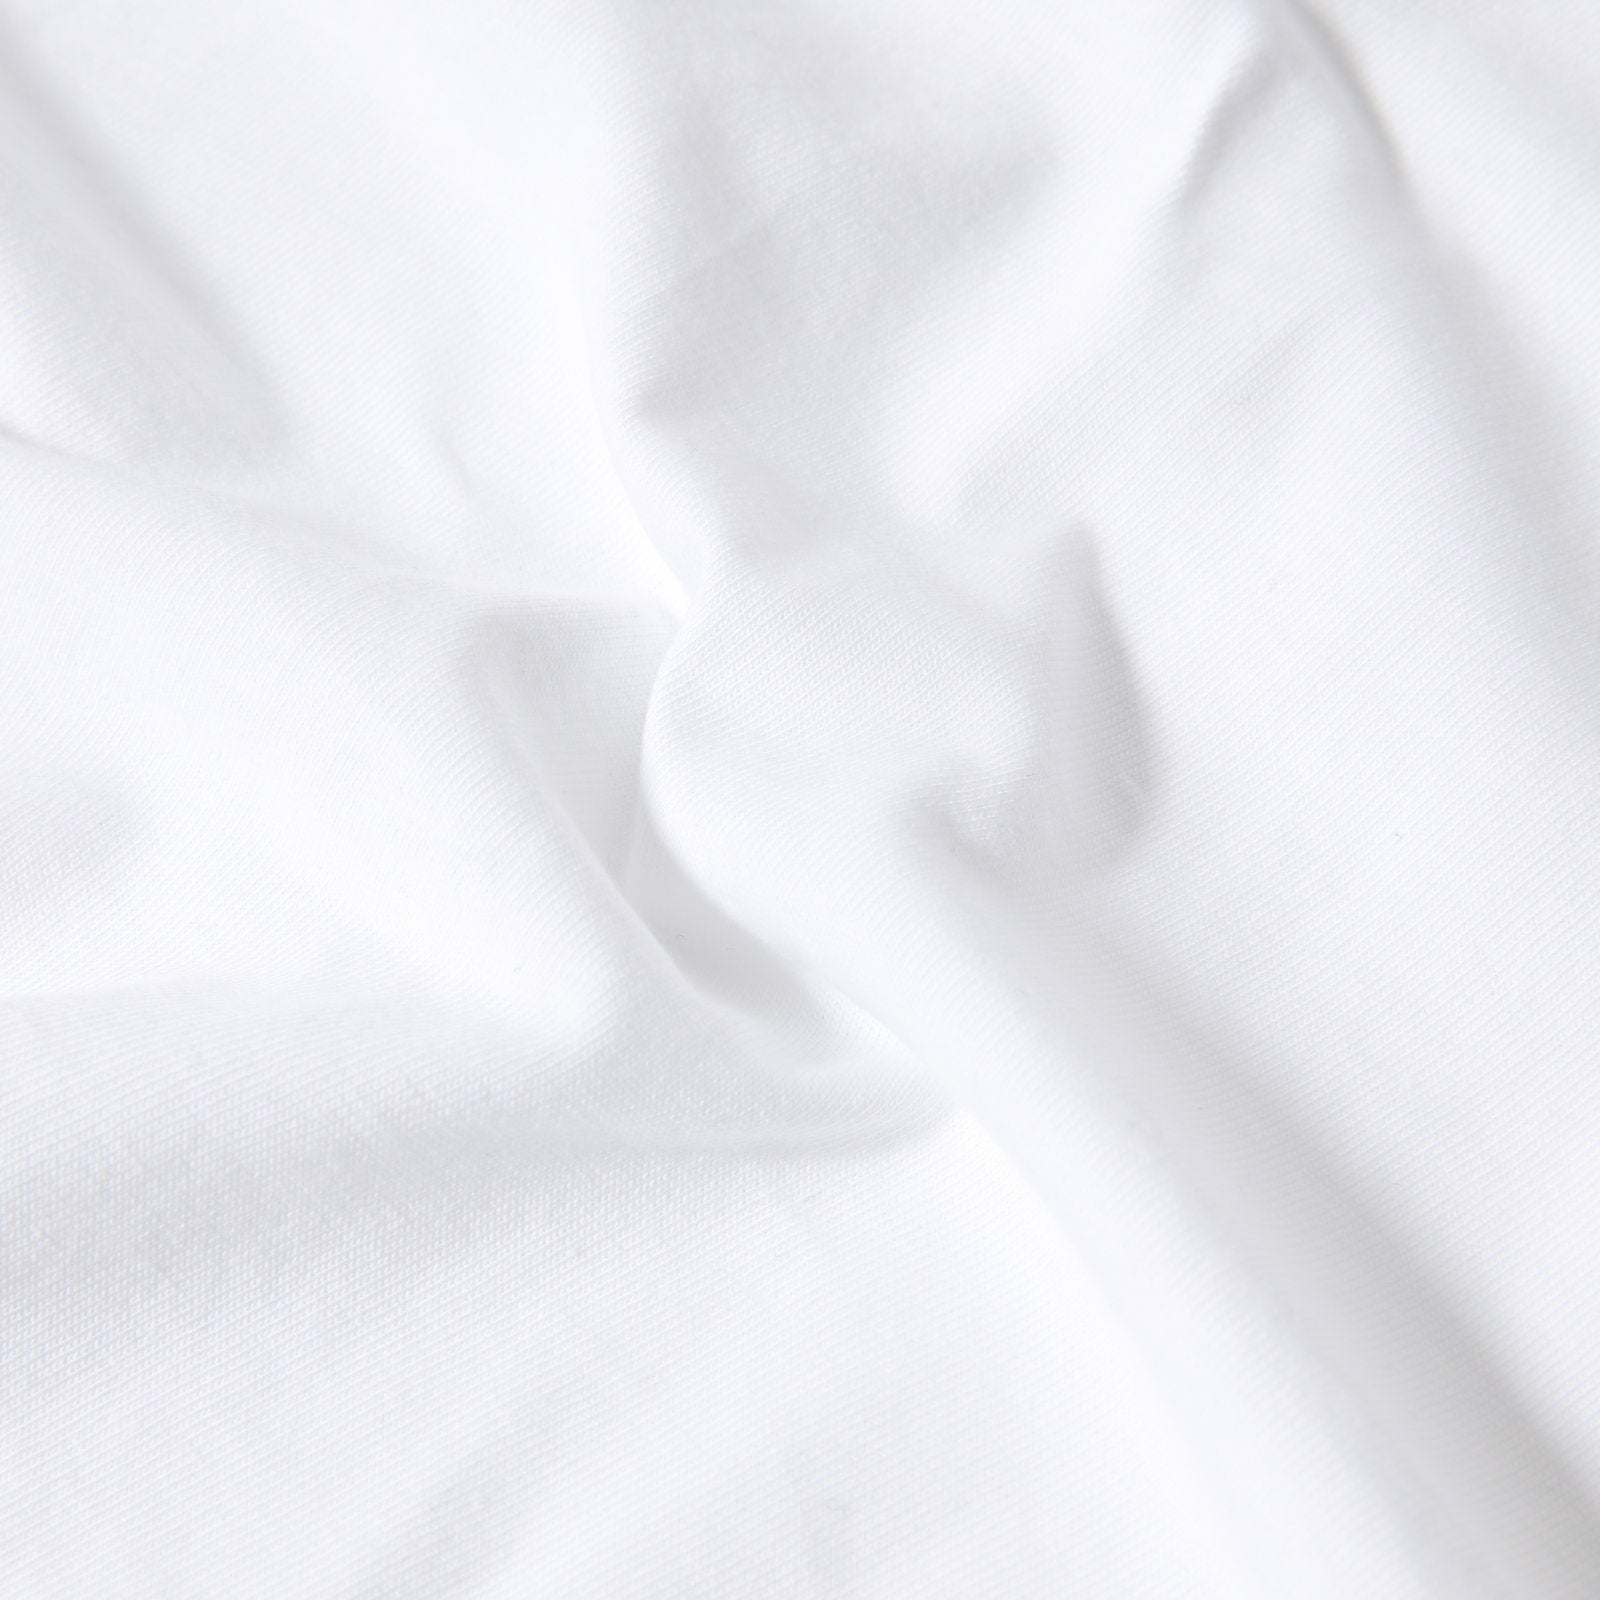 The North Face Galahm Graphic T-Shirt TNF White. Foto de detalhe do tecido.